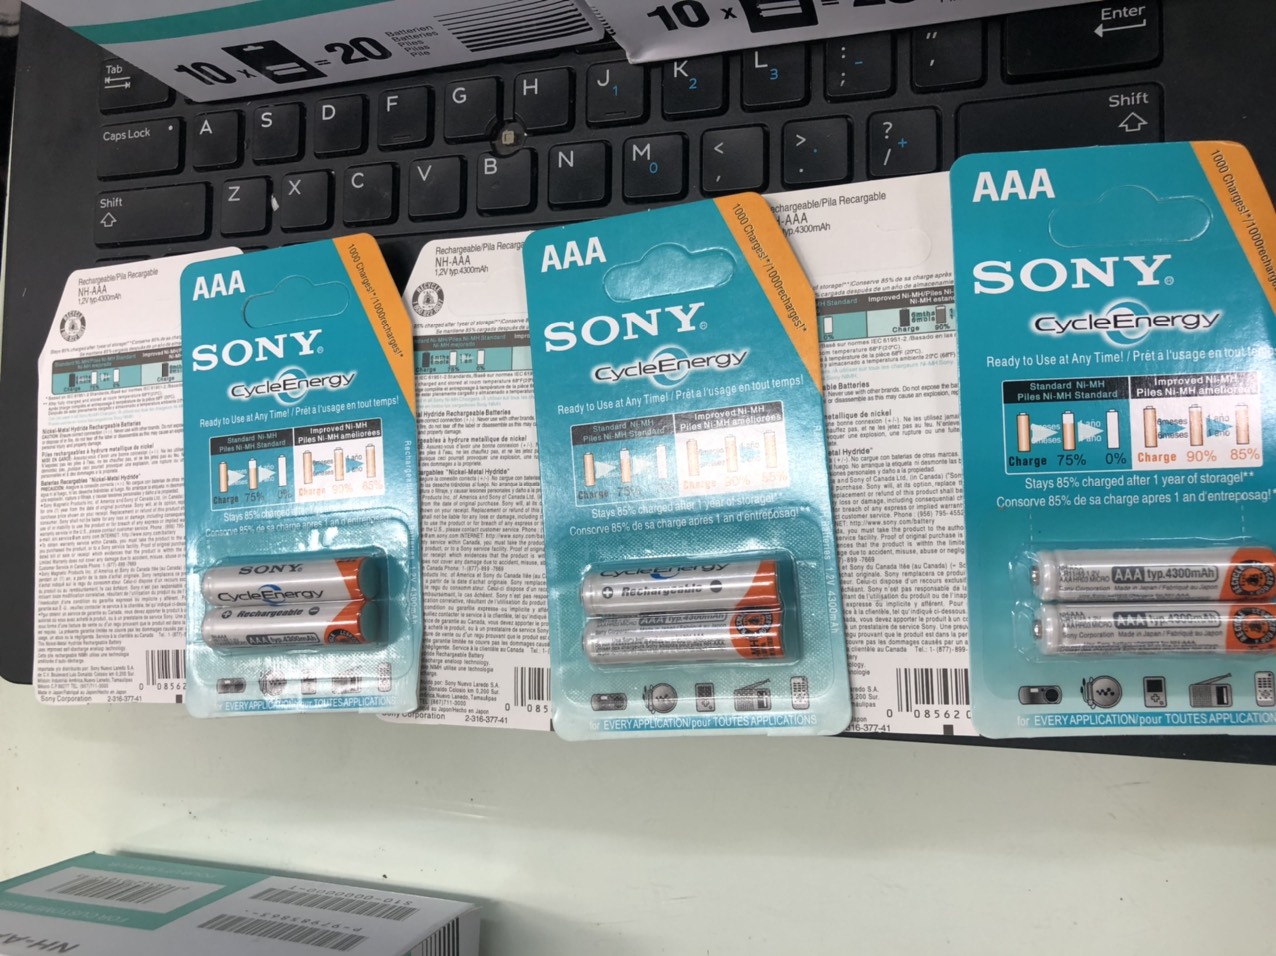 Pin sạc Sony AA / AAA - dung lượng 4600 mah - sạc đi sạc lại nhiều lần sản phẩm...